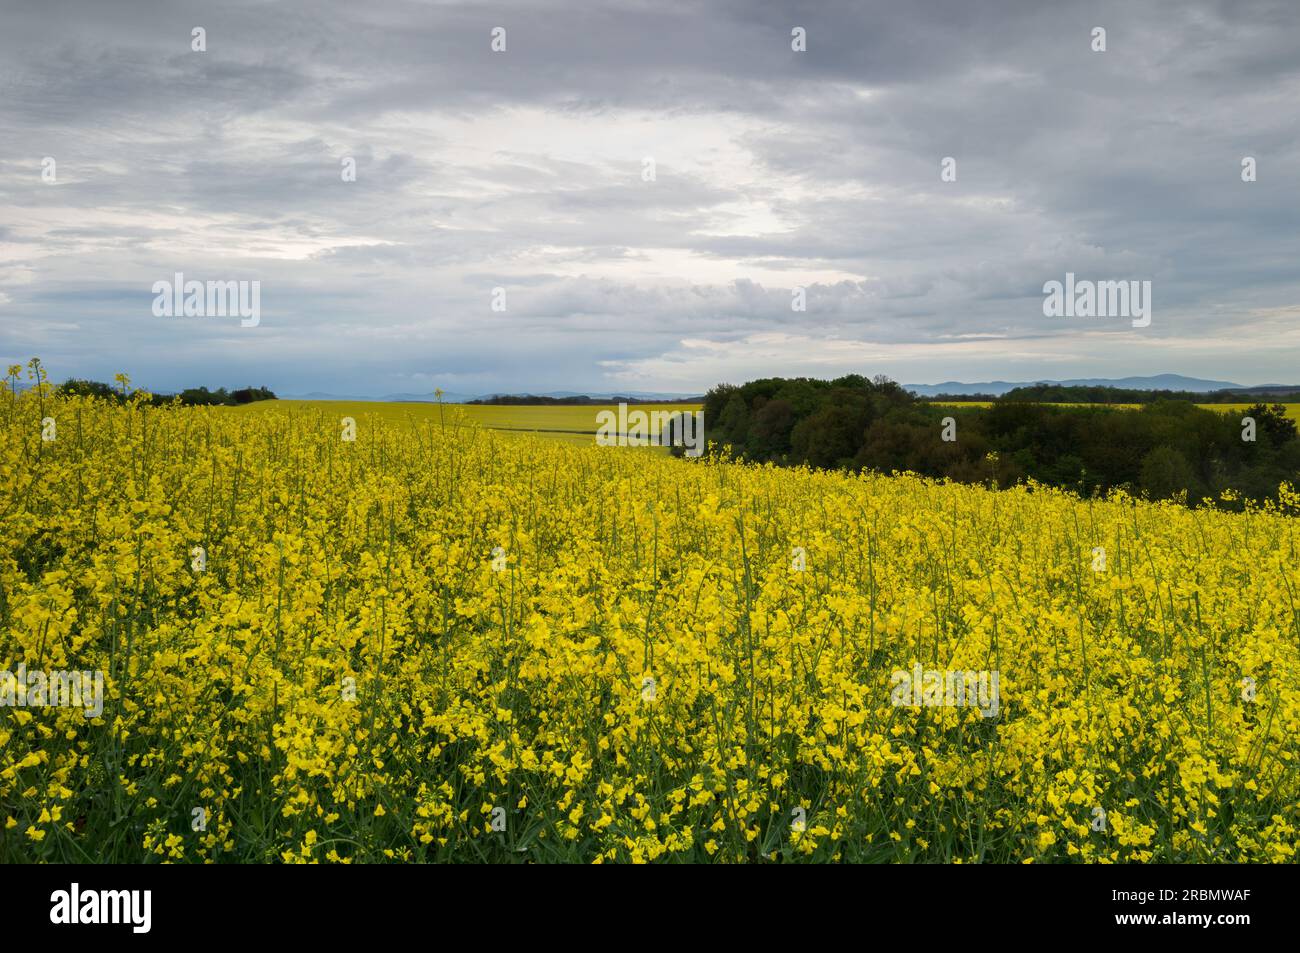 Ländliche Frühlingslandschaft mit blühenden Raps und bewölktem Himmel. Landwirtschaftsgebiet Banovce, Slowakei Stockfoto